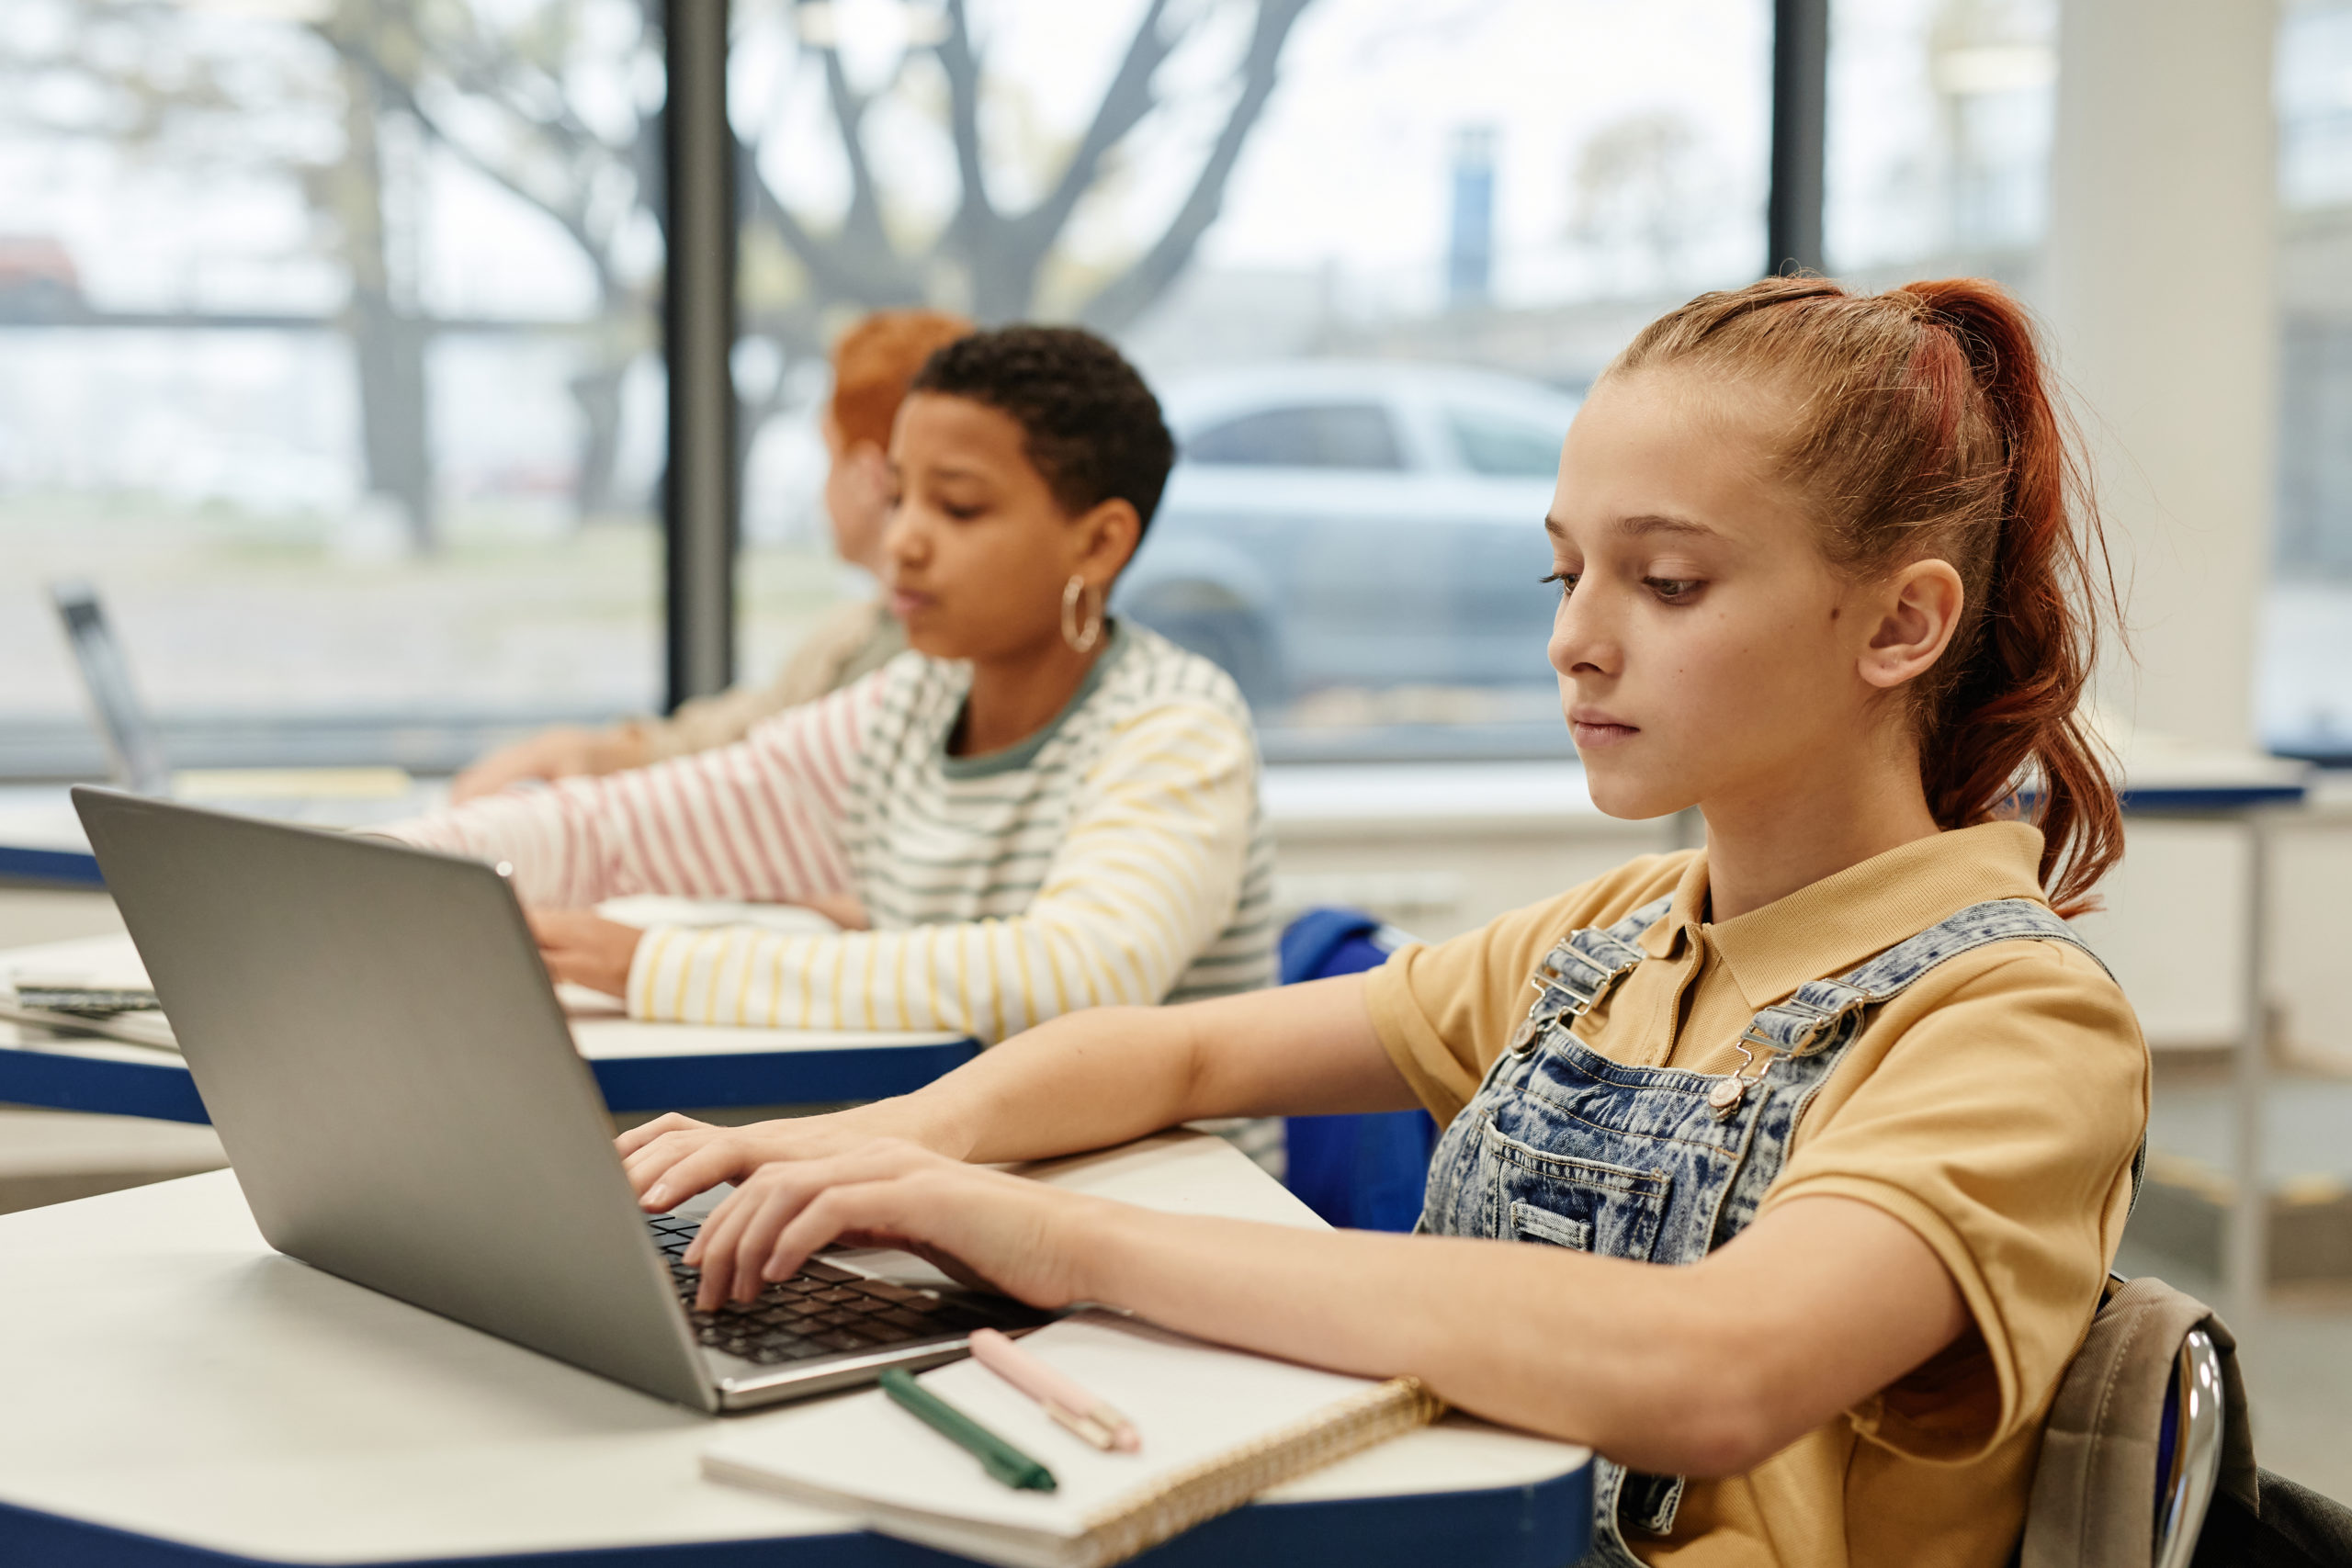 Image de l'article vedette montrant des enfants utilisant un ordinateur portable en classe pour favoriser la culture numérique